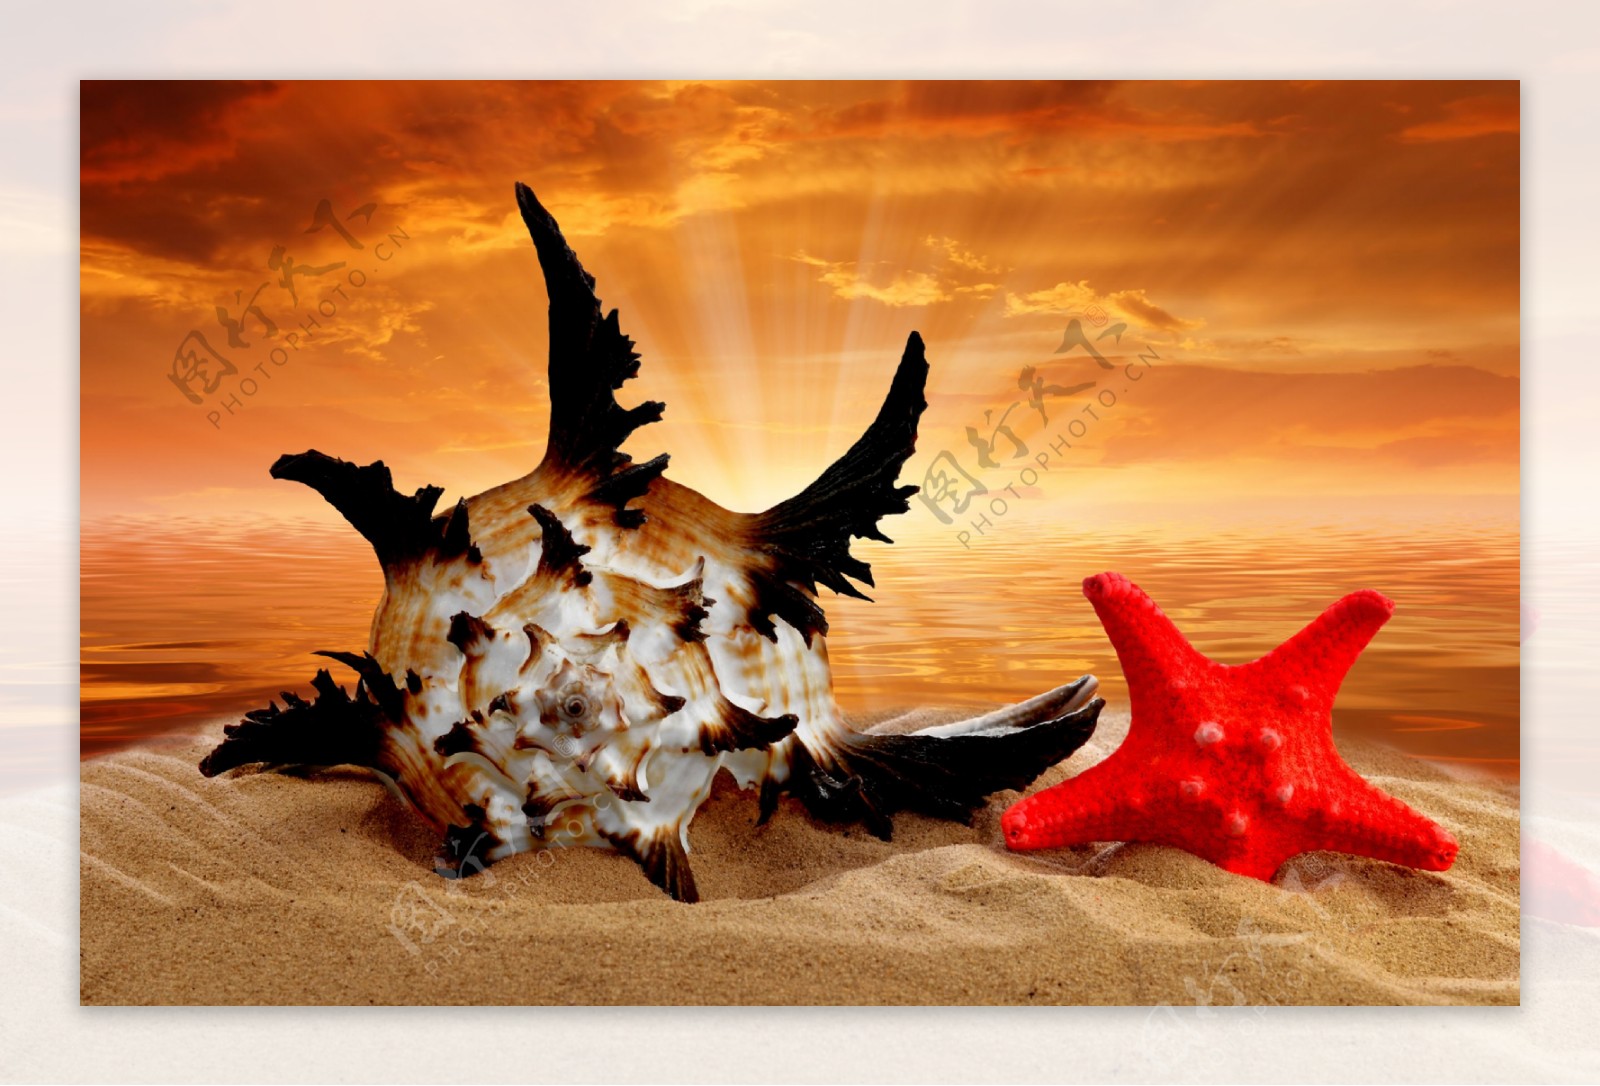 沙滩上的红色海星和海螺图片